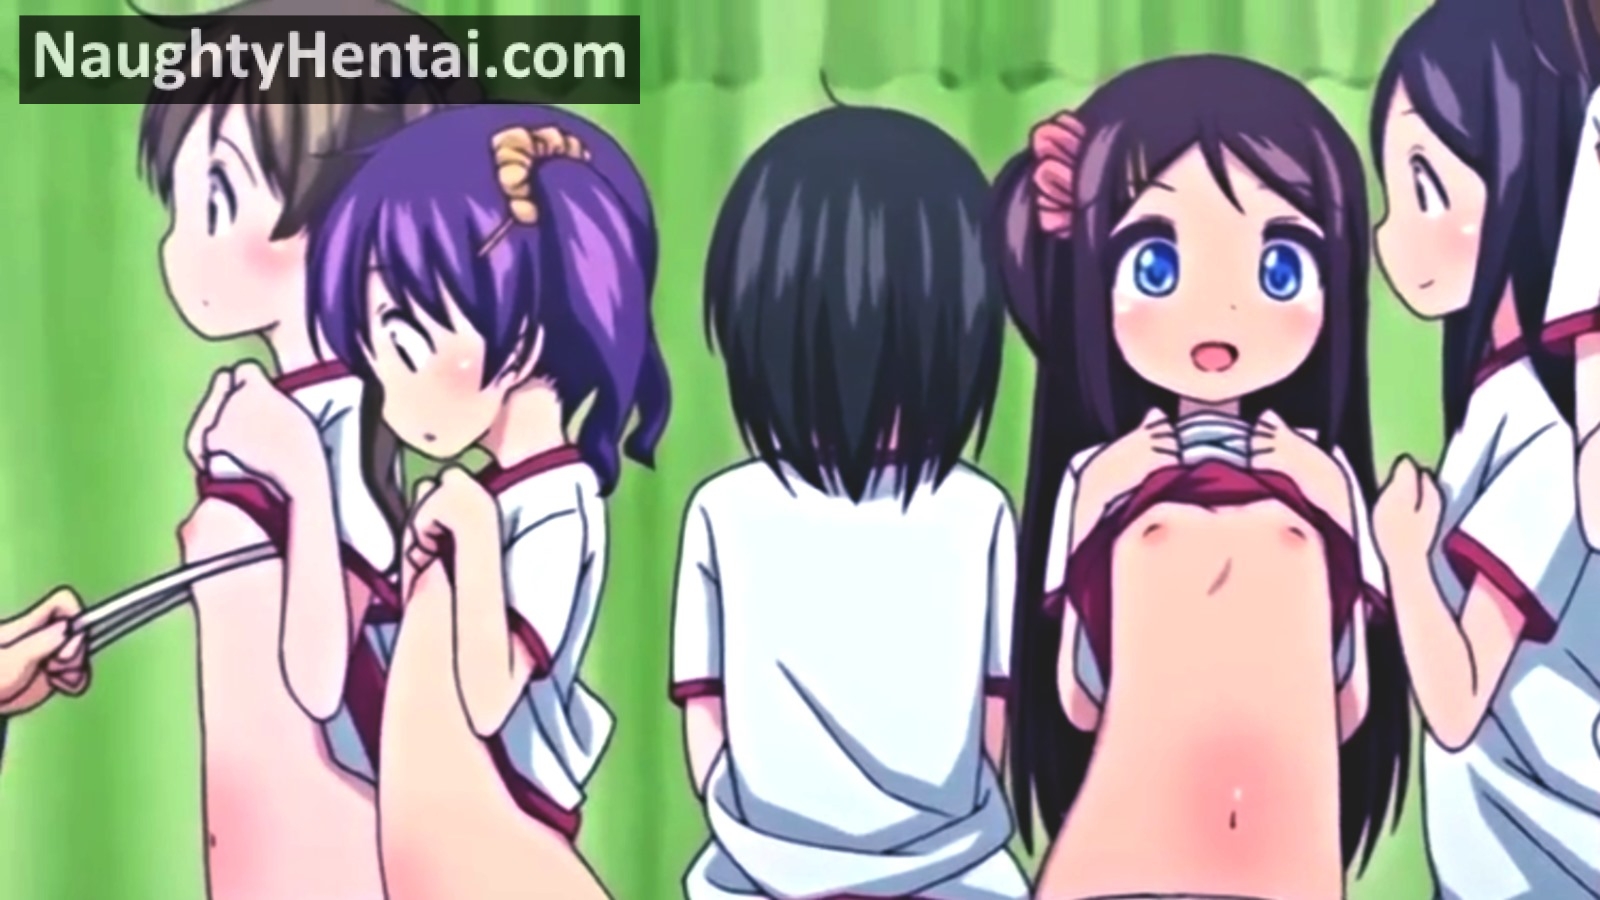 Crazy Anime Boobs - Ecchi Na Shintai Sokutei Anime Edition | Naughty Hentai Sex ...